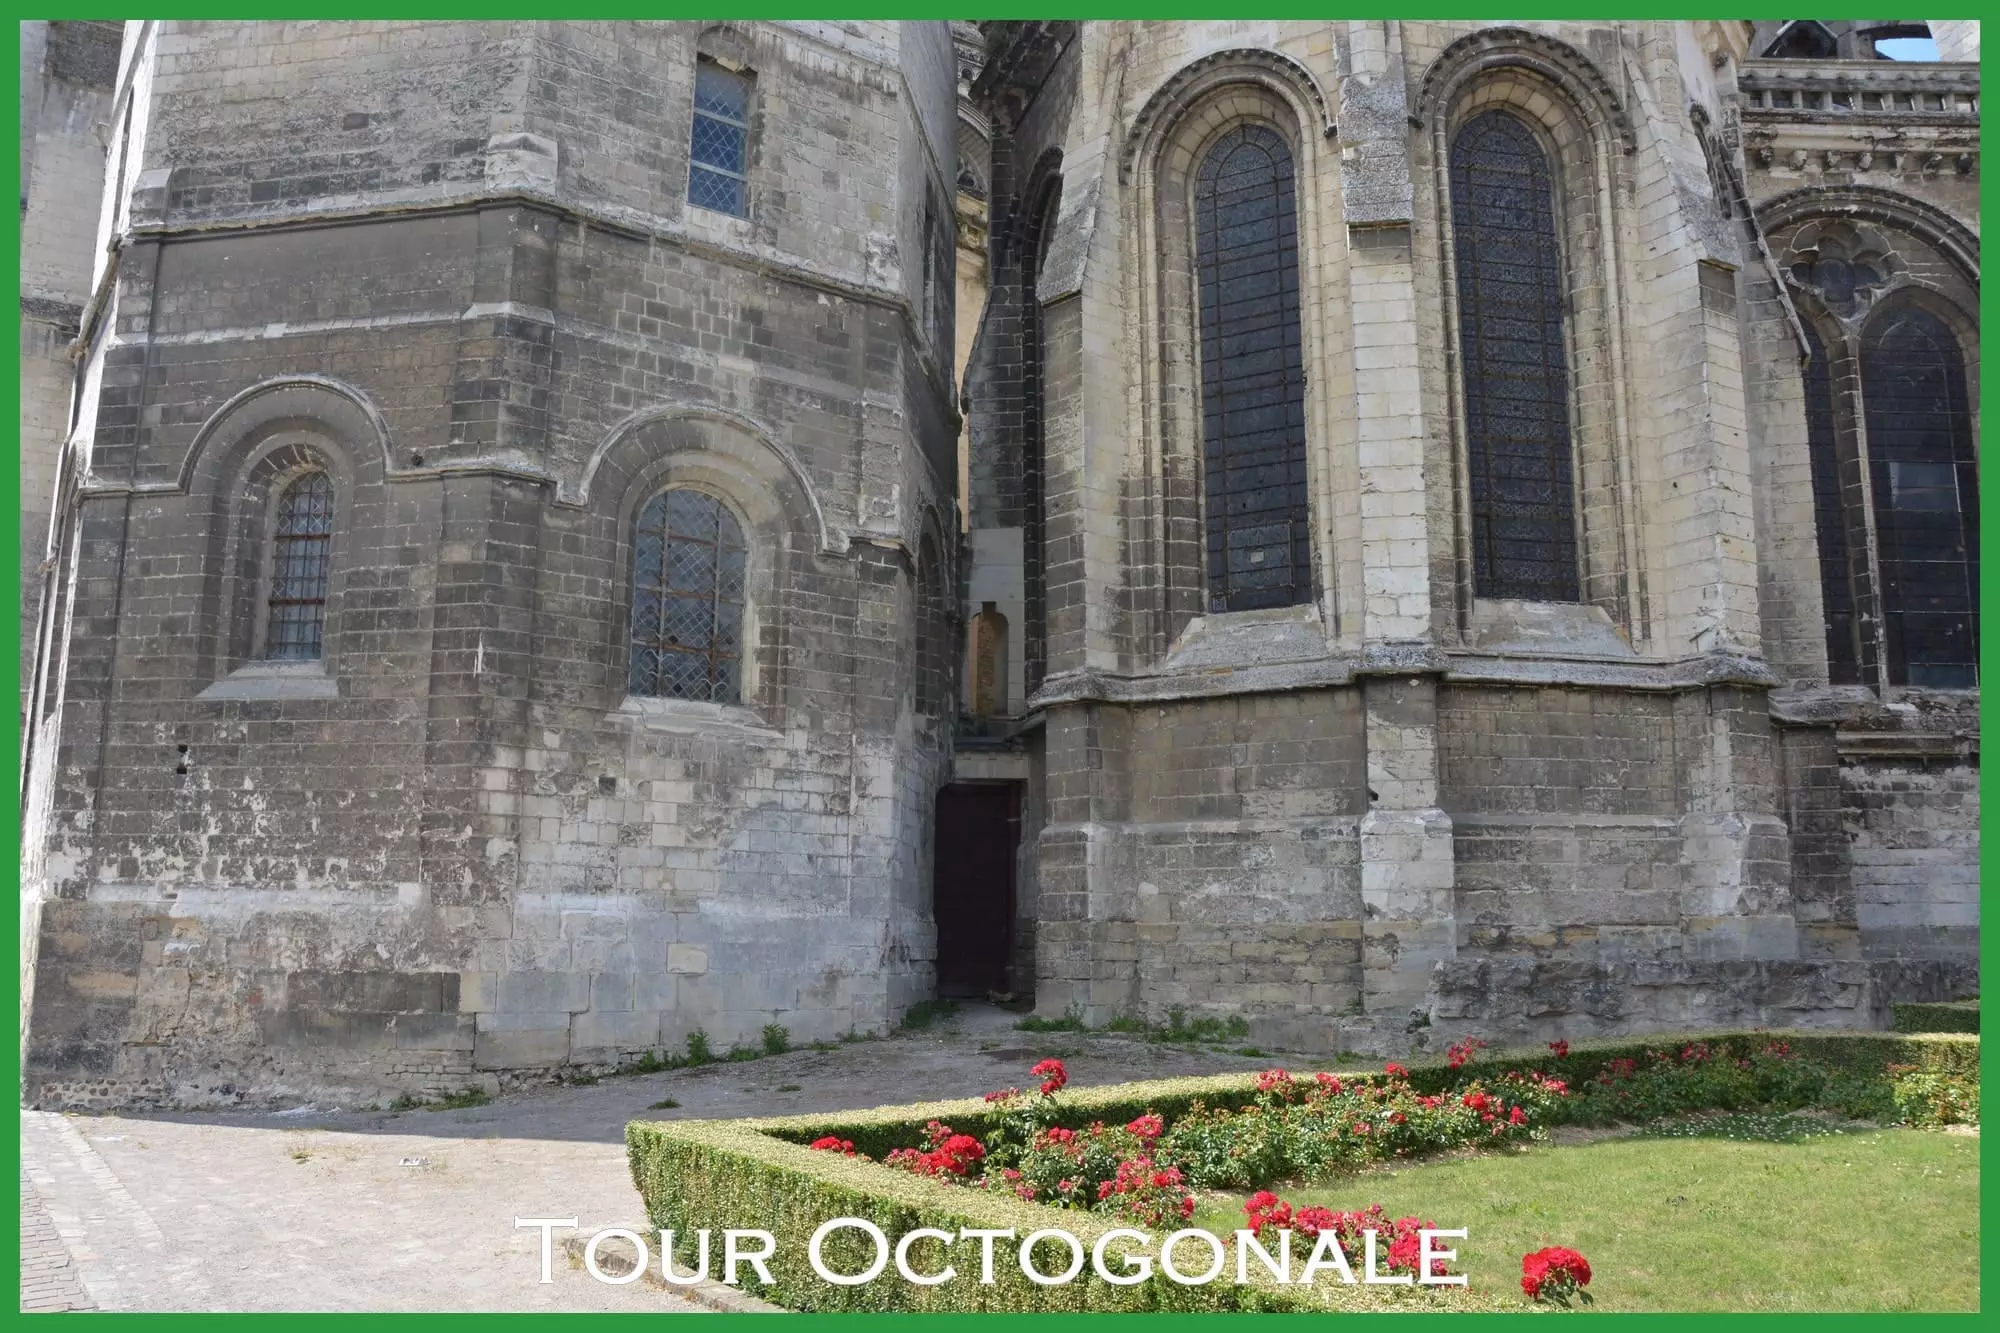 Tour Octogonale cathédrale de Saint-Omer